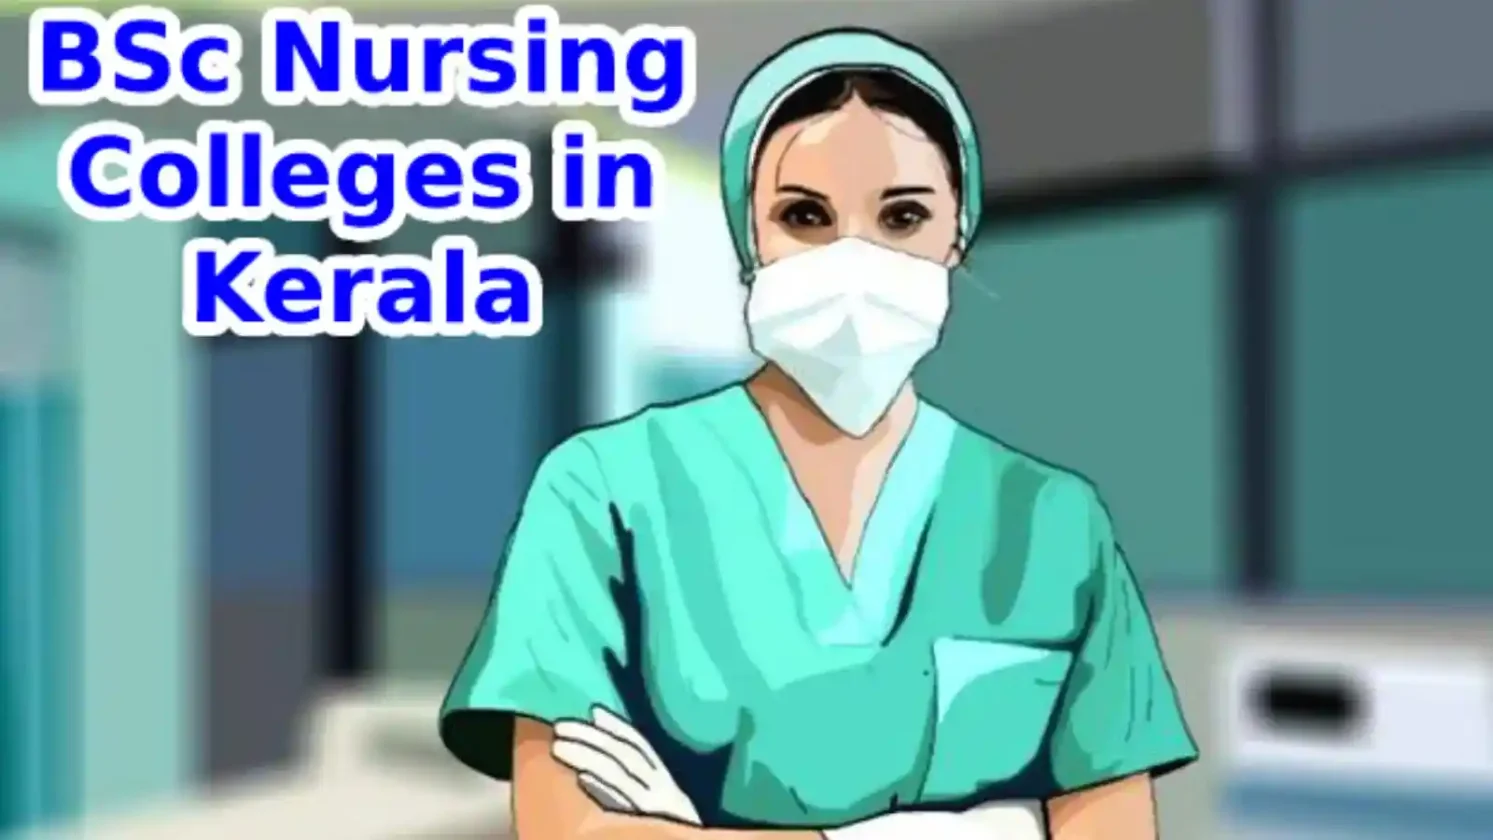 BSc Nursing Colleges in Kerala